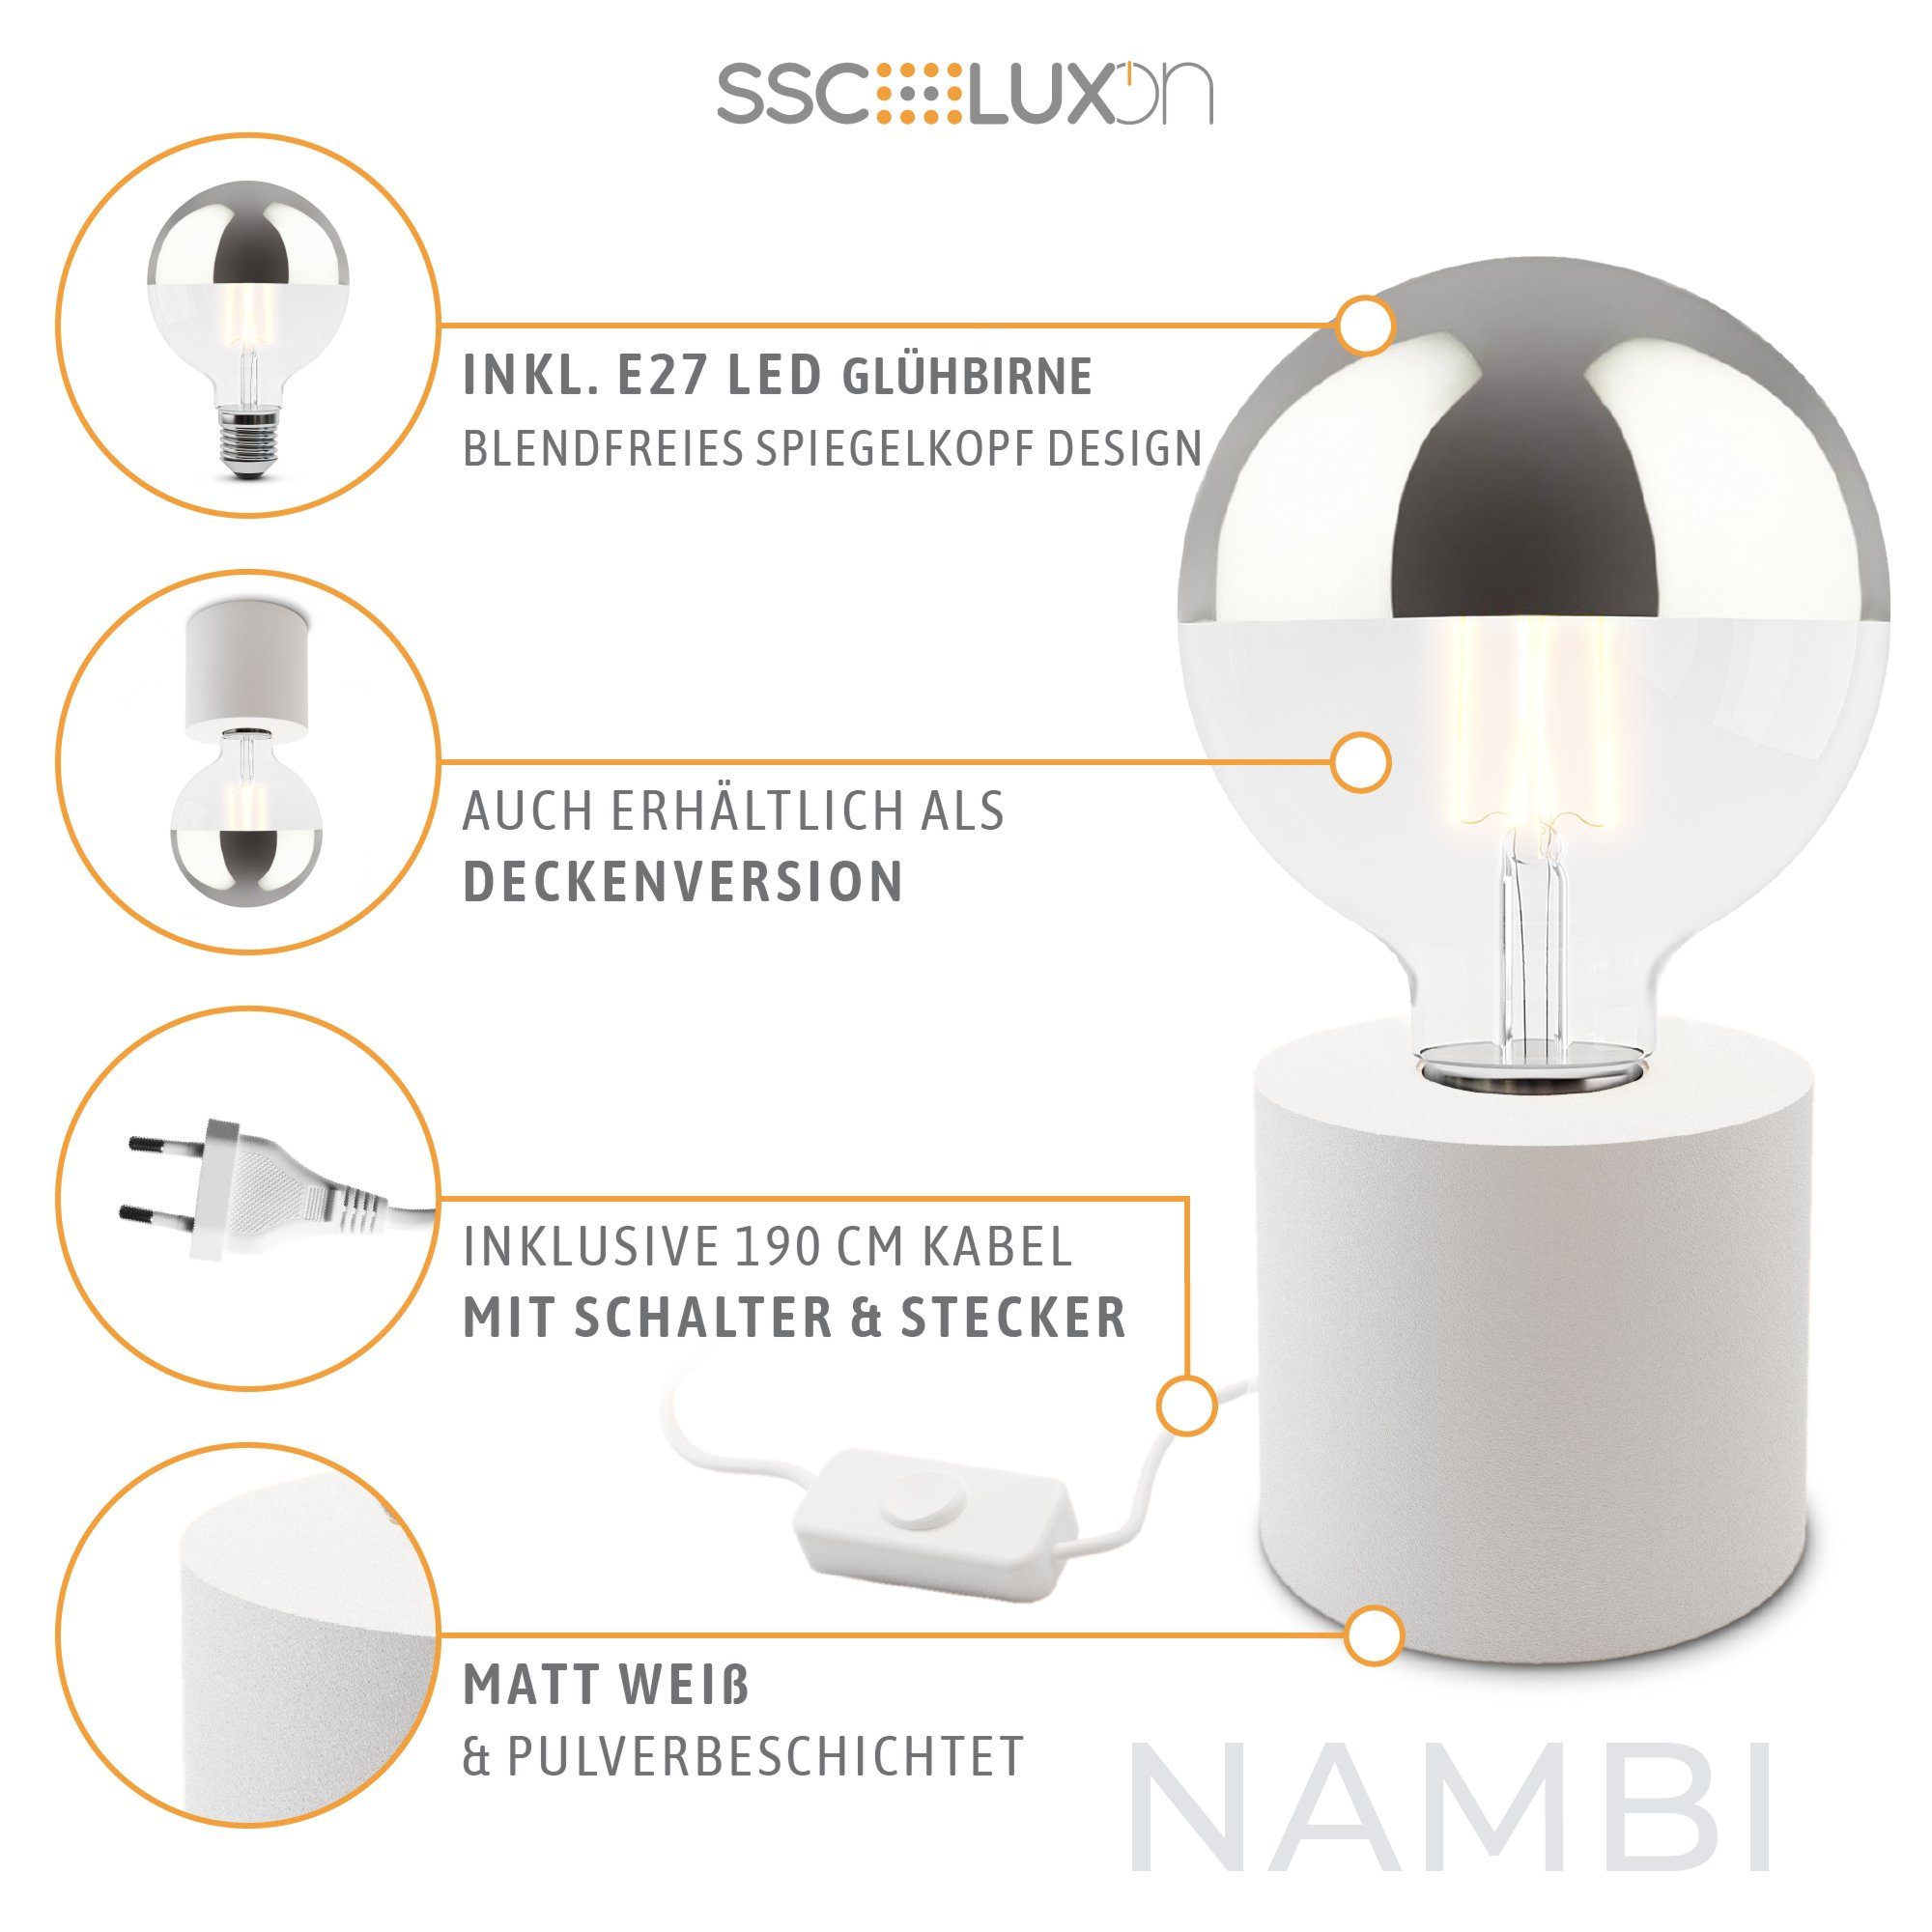 Kopfspiegel mit Silber, LED Tischlampe LED weiss NAMBI Warmweiß E27 Bilderleuchte SSC-LUXon Design